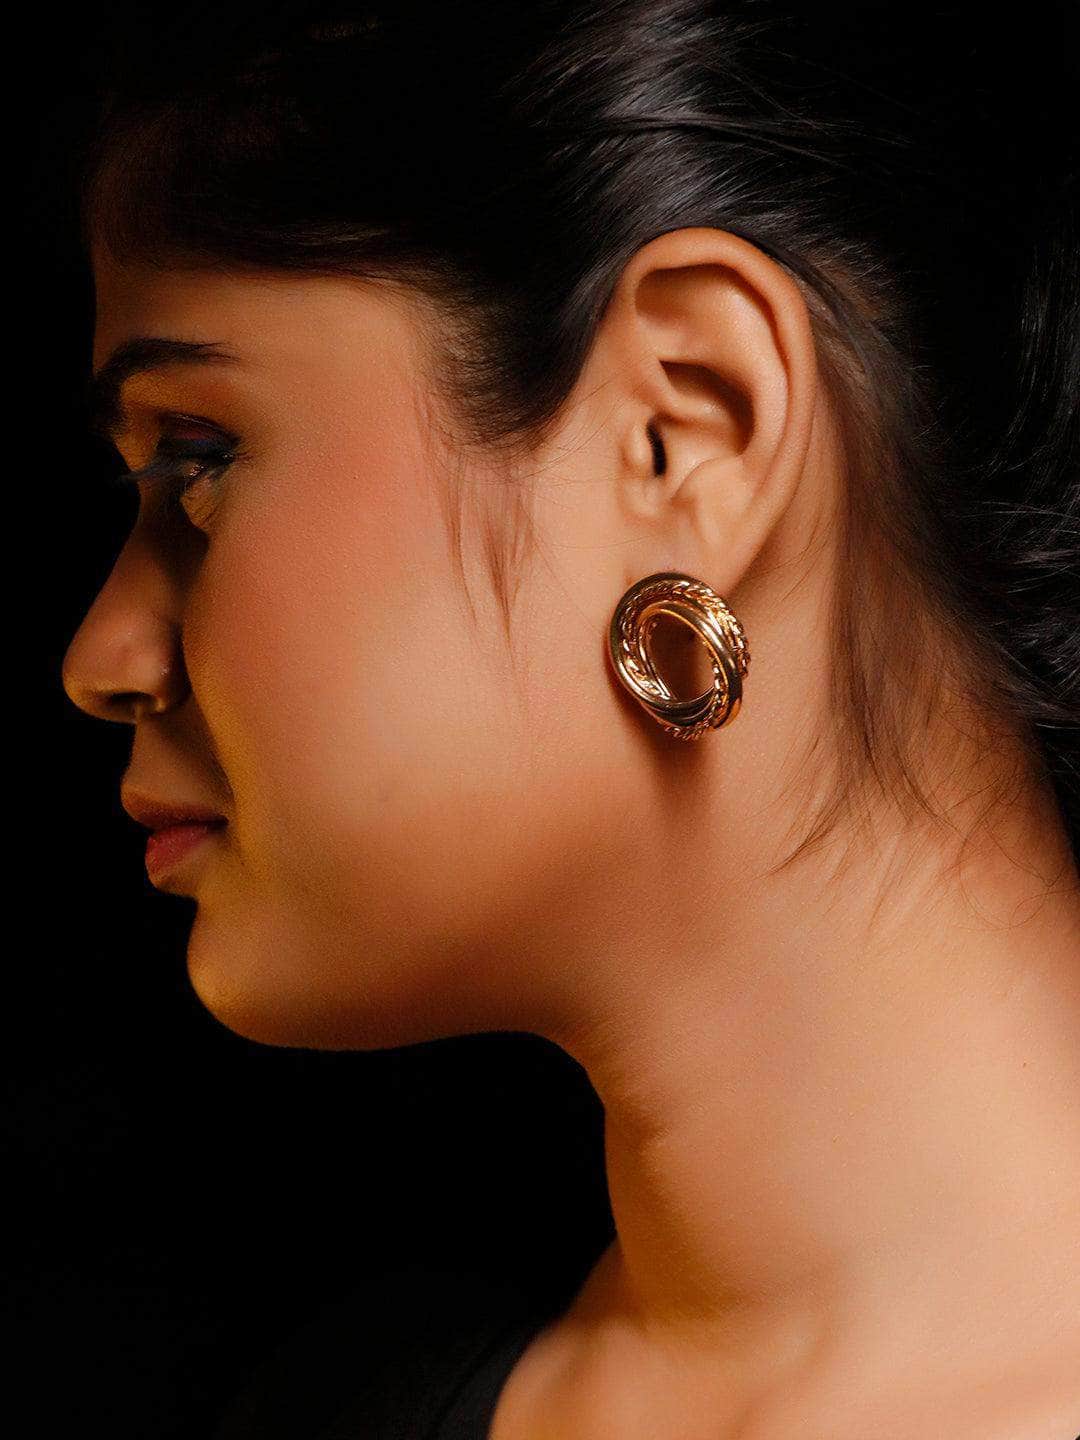 Ishhaara Nikki Mehra In Twisted Stud Hoop Earrings